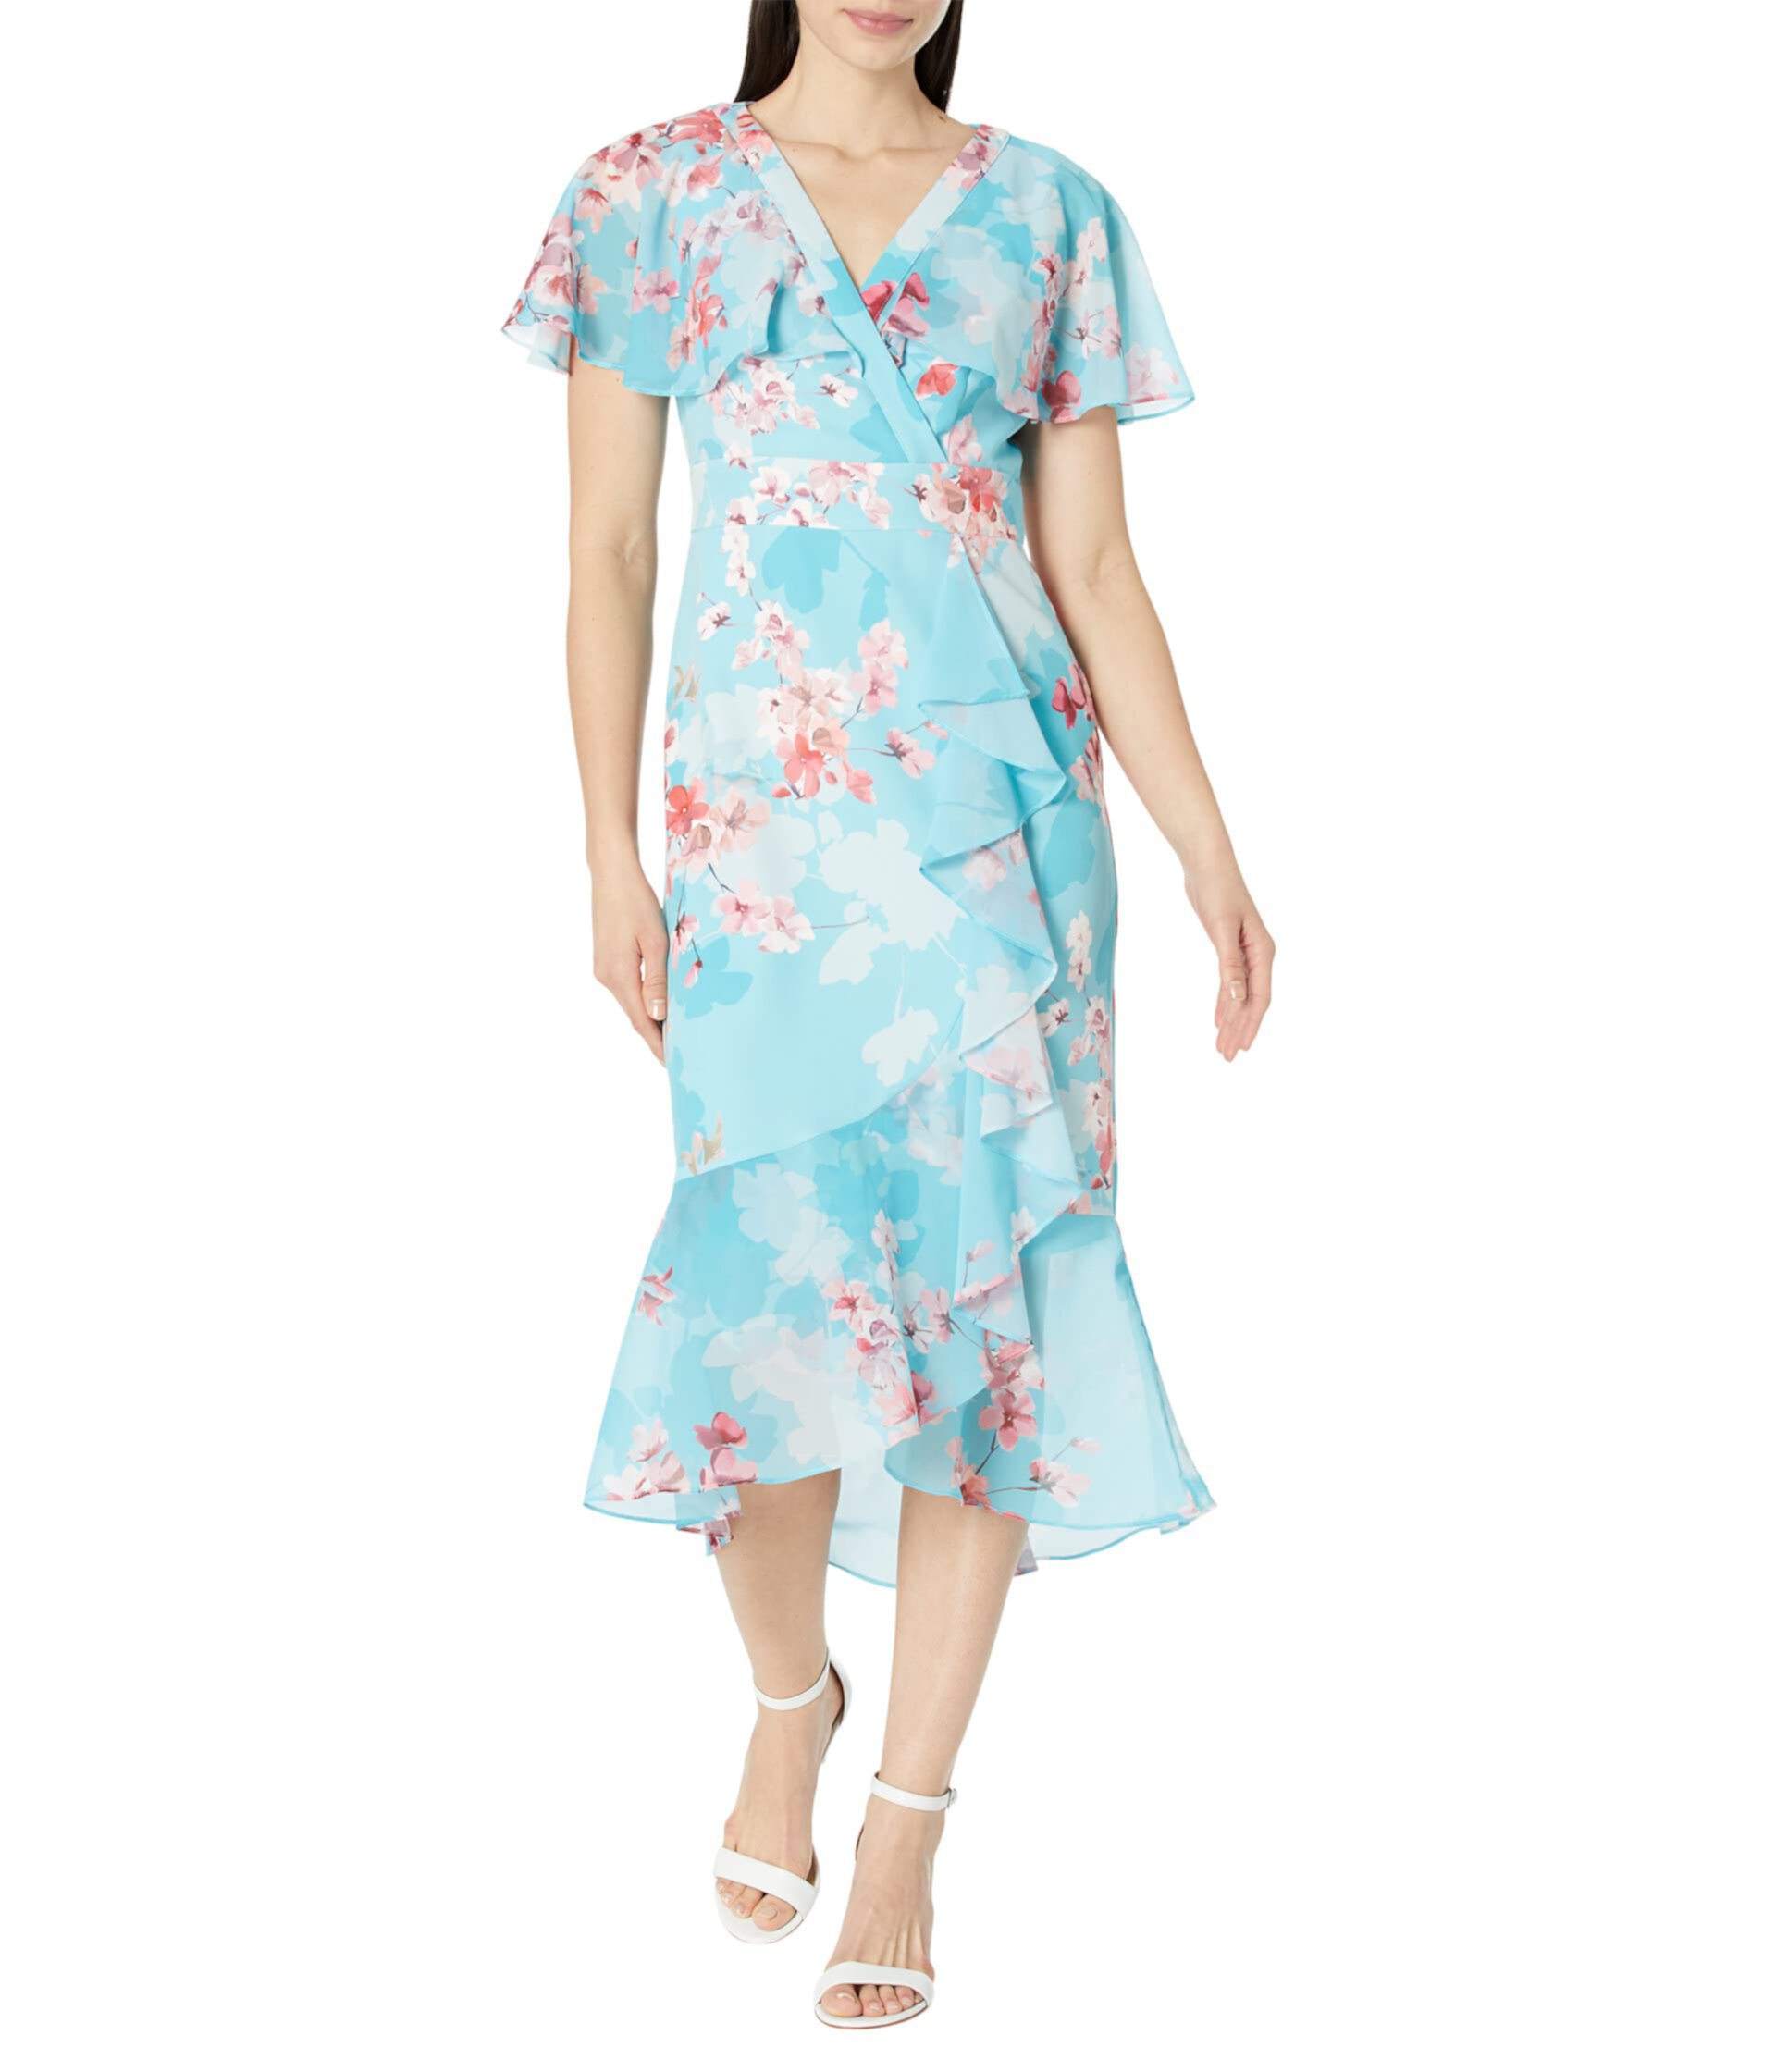 Платье с цветочным принтом и рукавами-крылышками, каскадом и рюшами по подолу Adrianna Papell